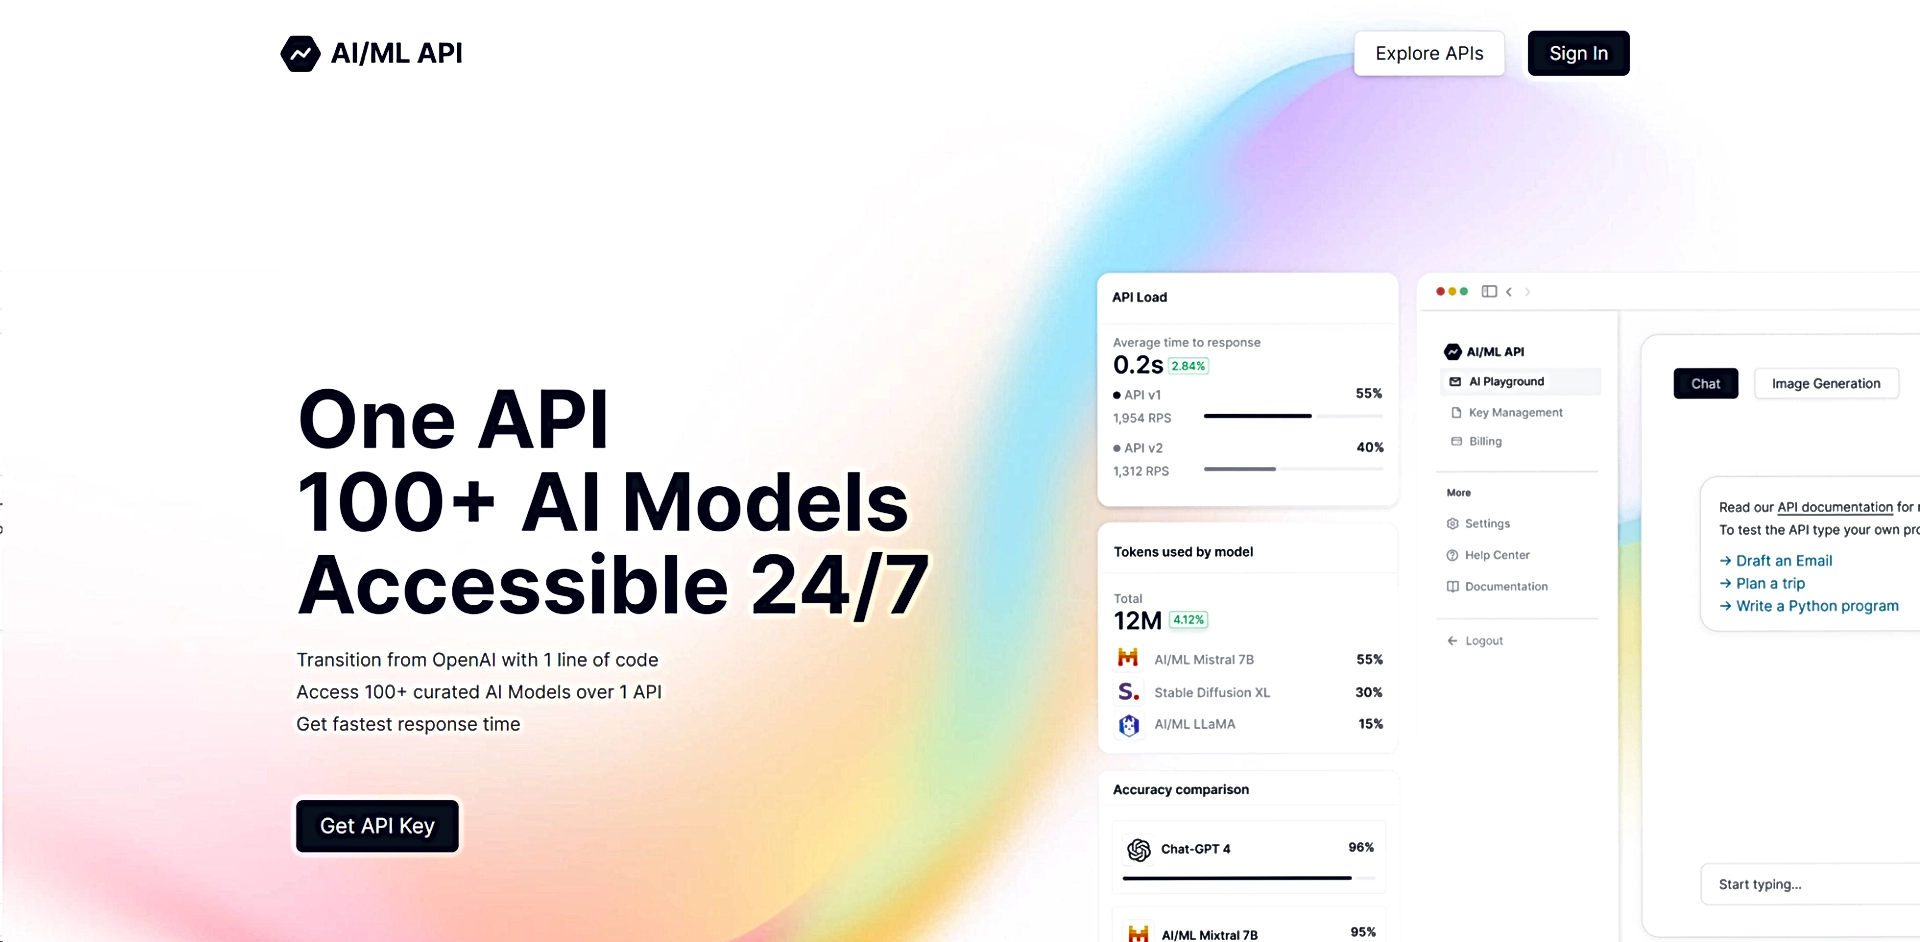 AI/ML API featured